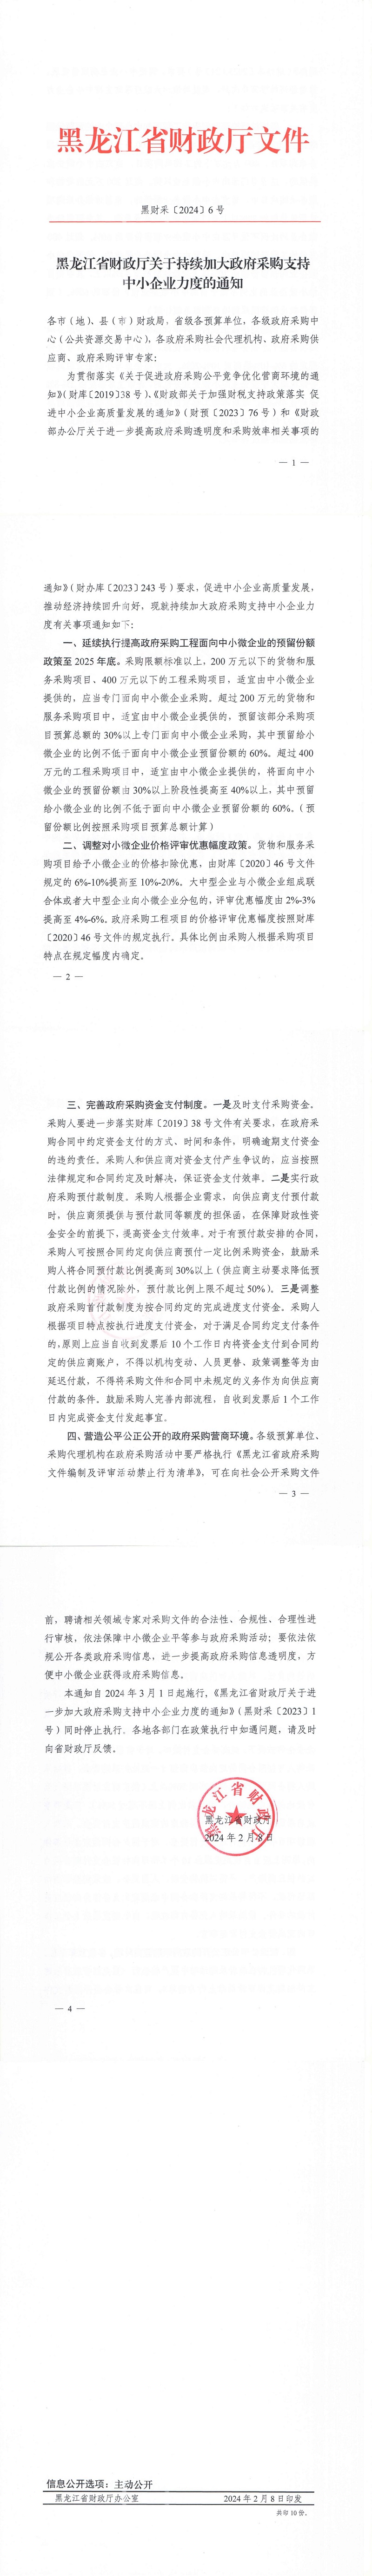 黑龙江省财政厅关于持续加大政府采购支持中小企业力度的通知_00.jpg